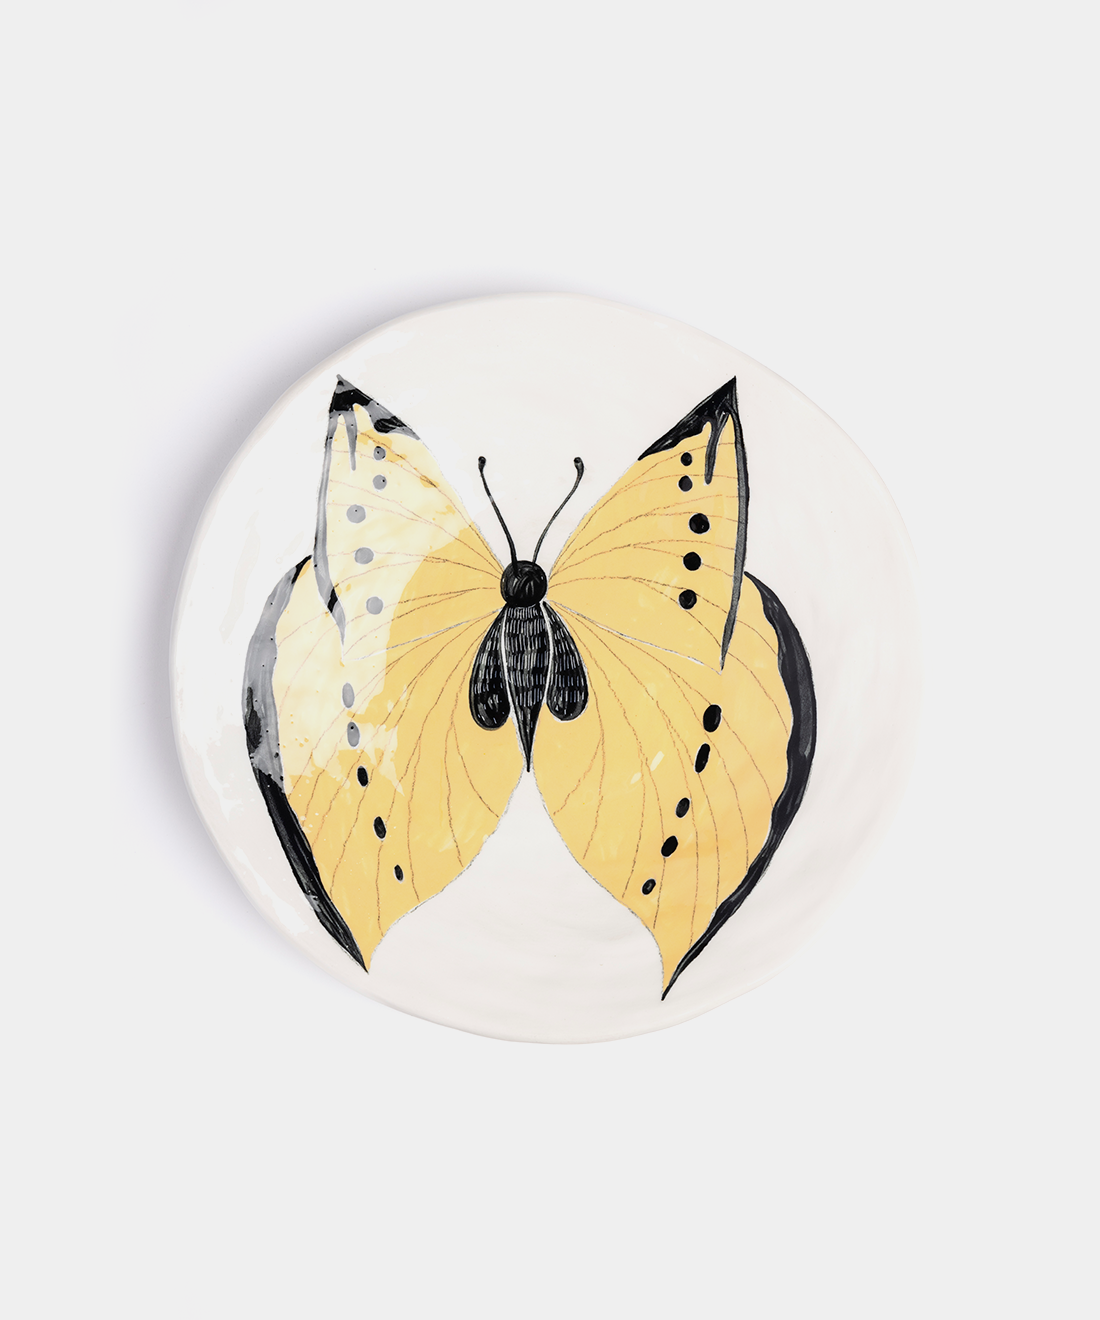 Medium Butterfly Ceramic Plates, 5